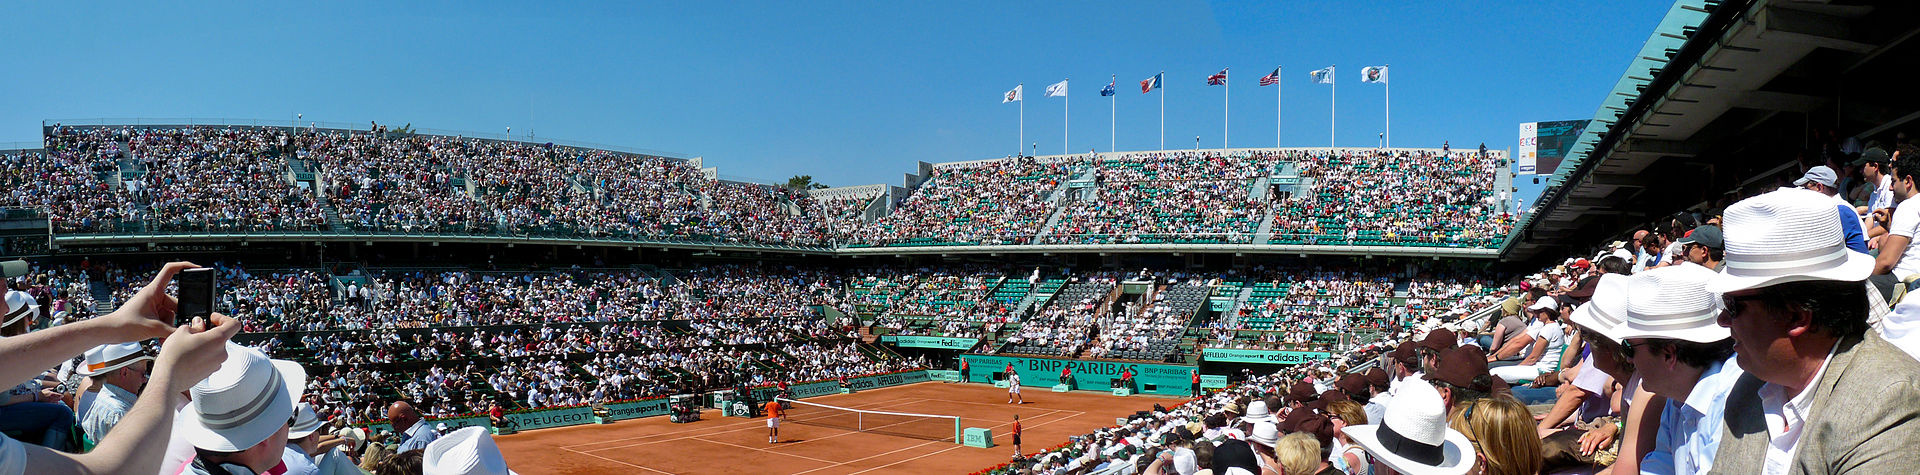 Court Philippe Chatrier 1er tour de Roland Garros 2010 tennis french open